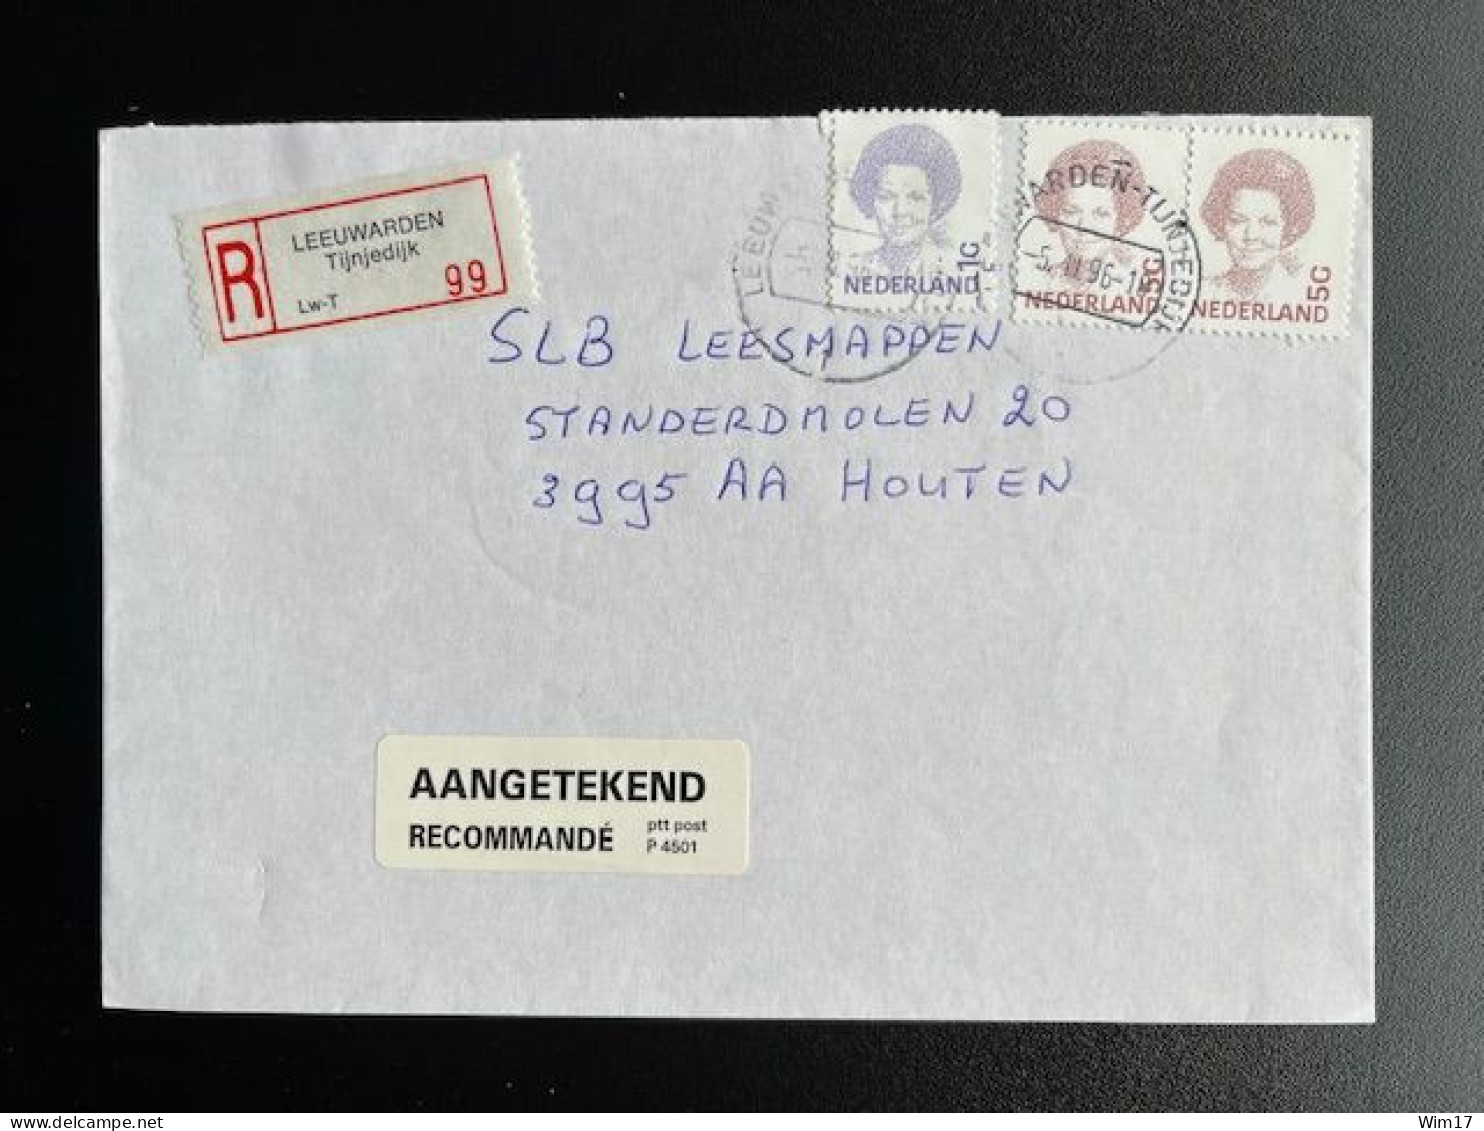 NETHERLANDS 1996 REGISTERED LETTER LEEUWARDEN TIJNJEDIJK TO HOUTEN 05-03-1996 NEDERLAND AANGETEKEND - Briefe U. Dokumente